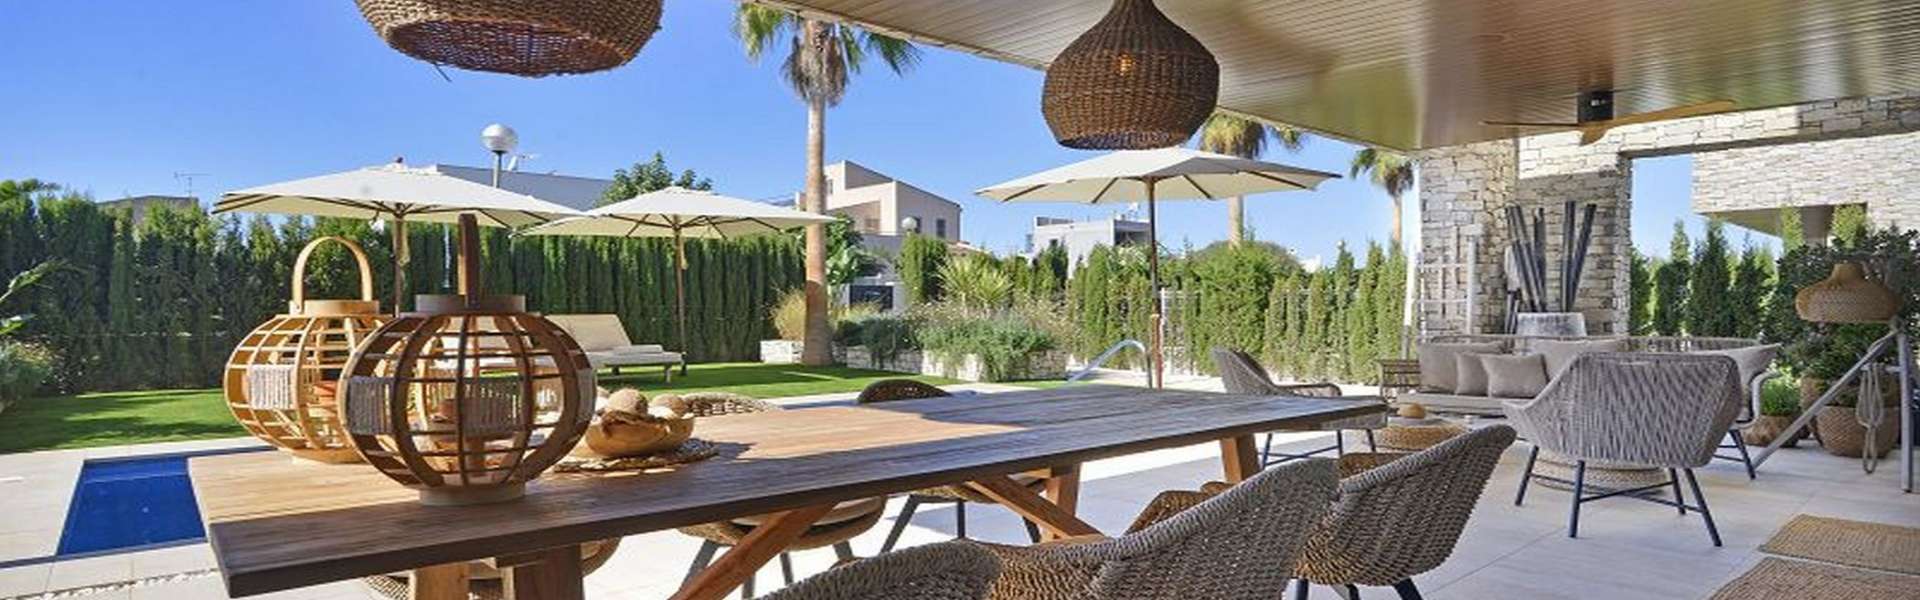 Sa Ràpita - Beautiful villa for sale near the beach